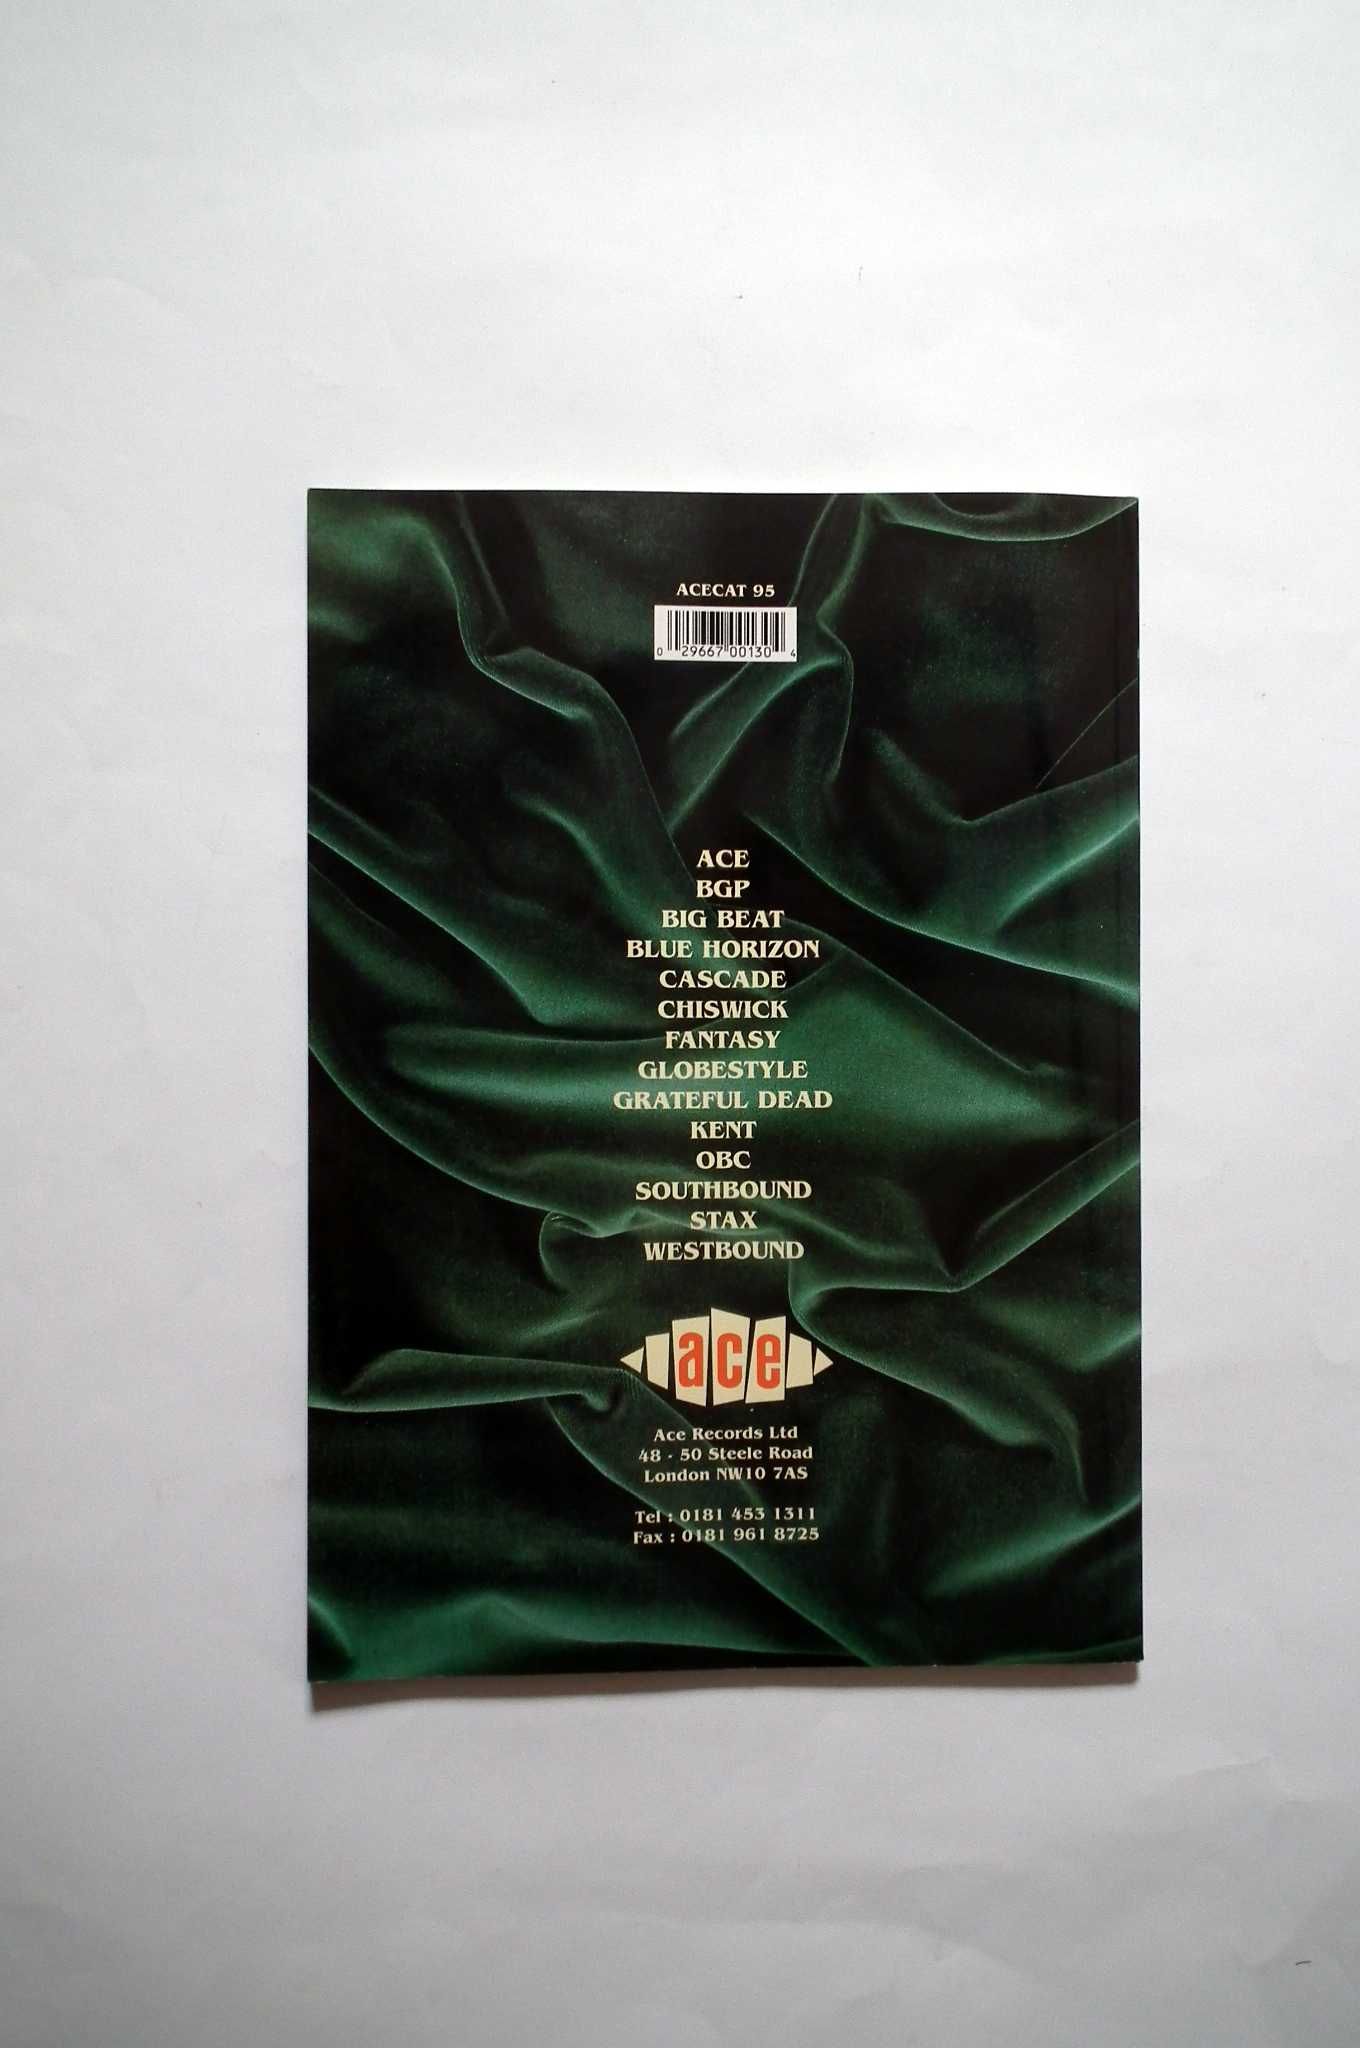 Catálogo da Ace Records, 1995. Envio grátis.